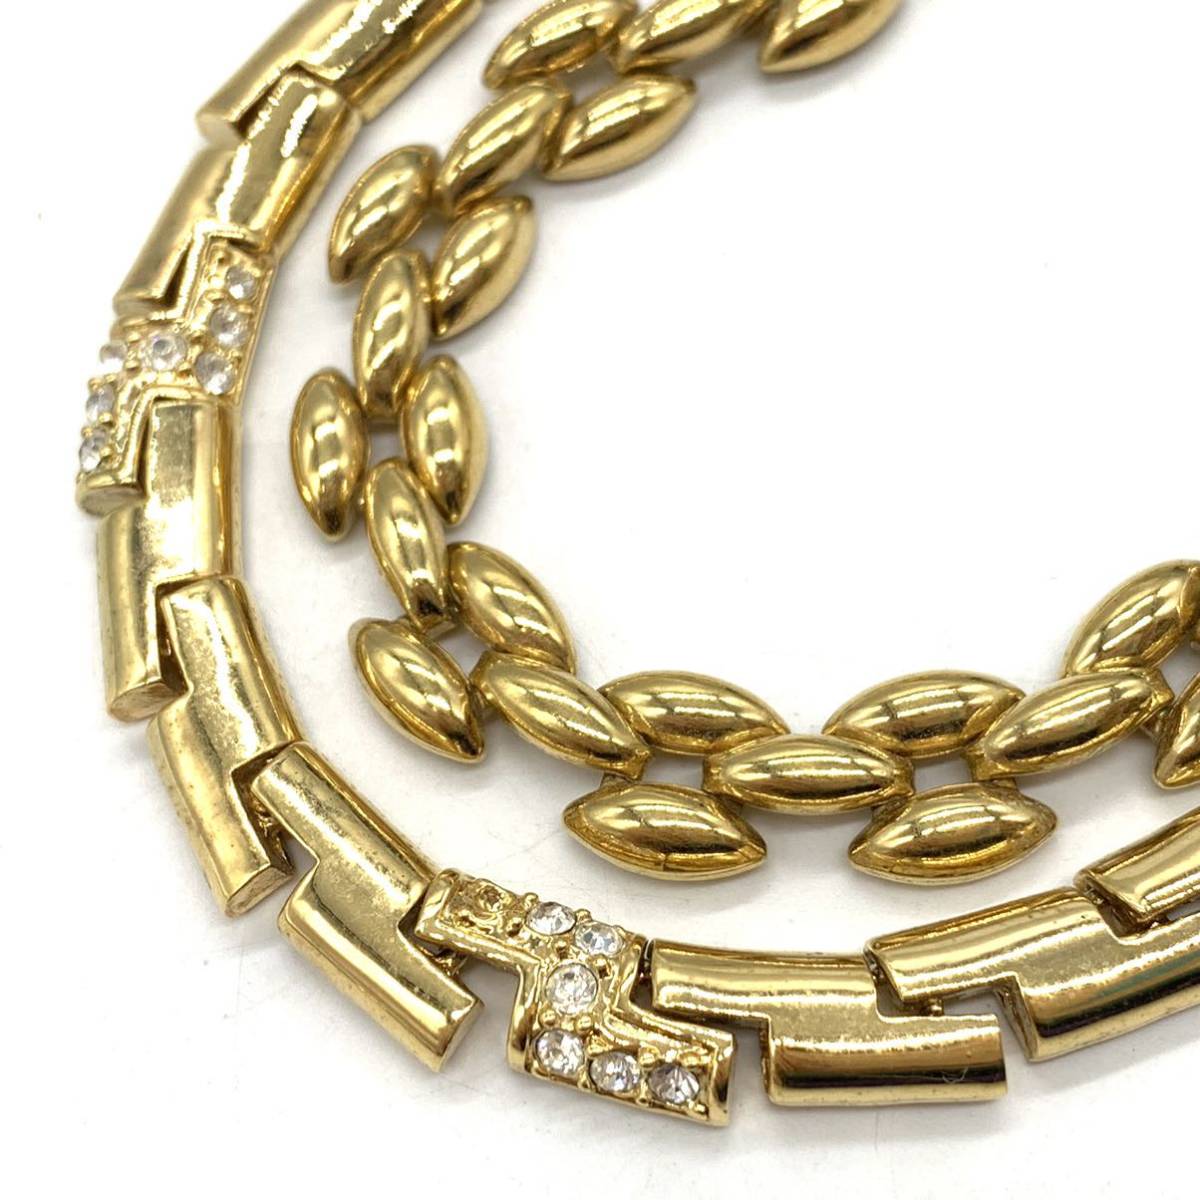 大ぶり!!■ネックレス10点おまとめ■n約323gパール クリスタル ANNEKLEIN CZ ビブネックレス necklace accessory jewelry CE0 _画像3